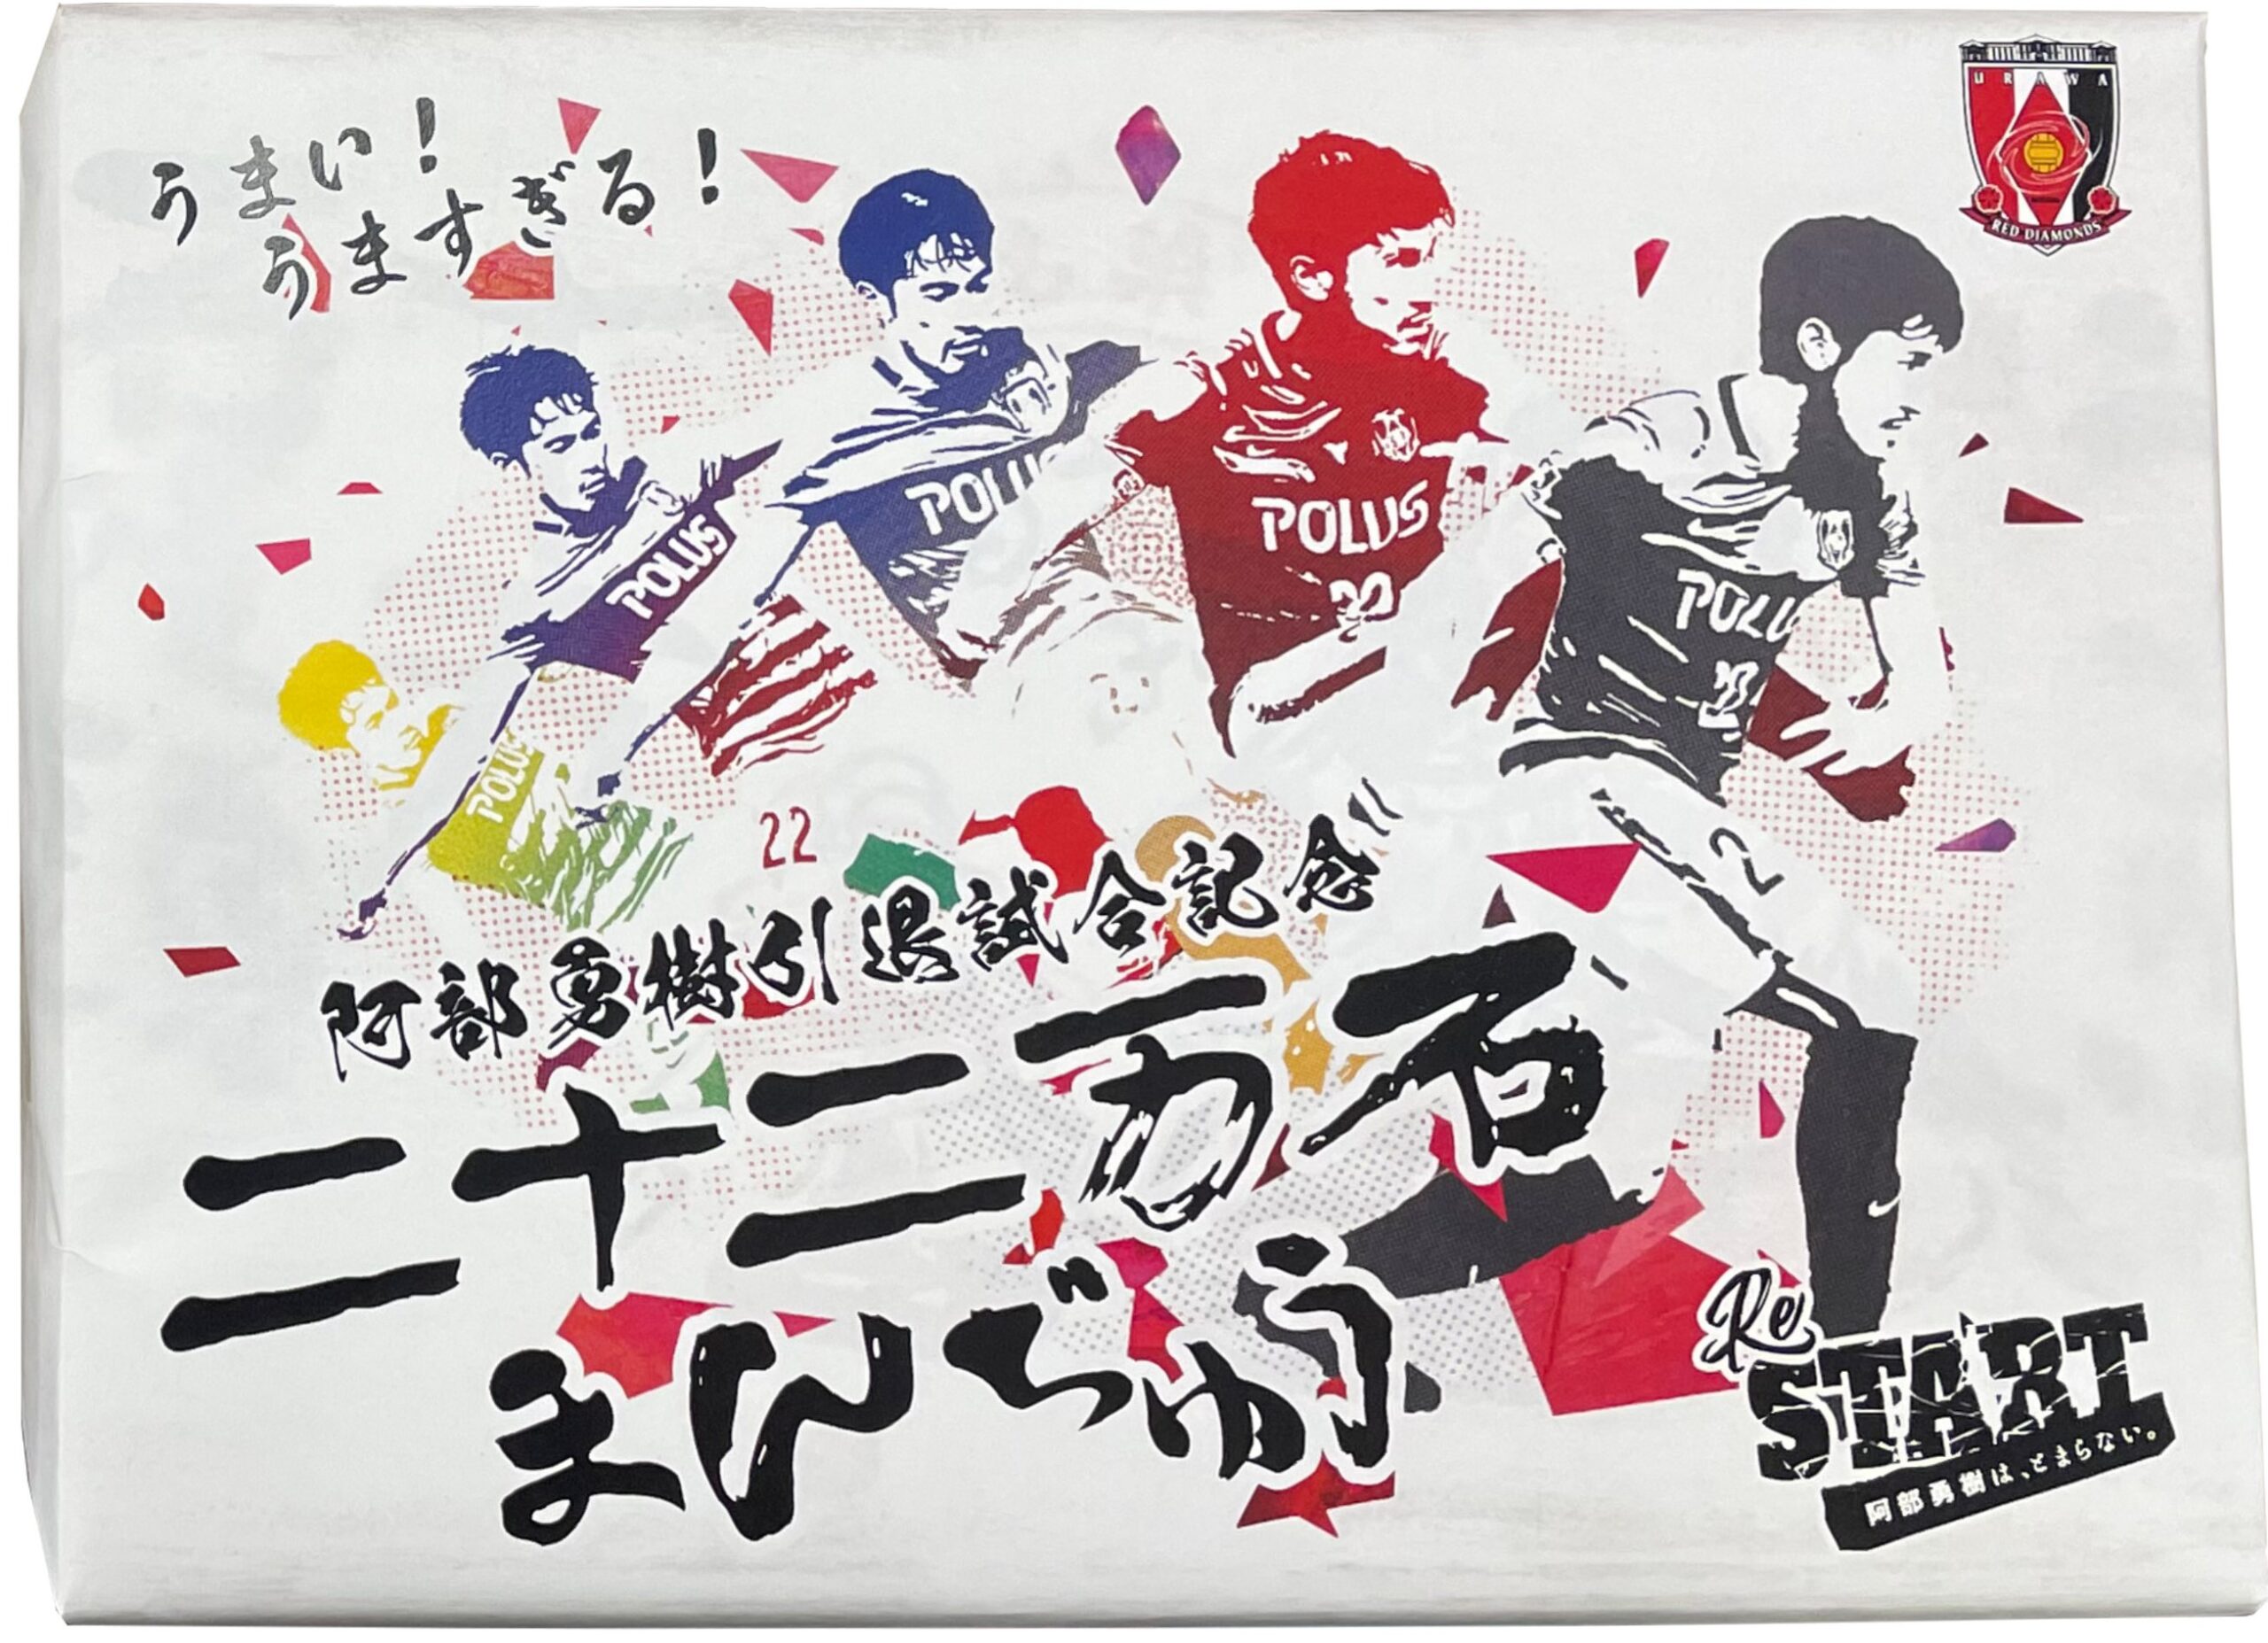 埼玉新聞２０２２年１１月１２日(土)の朝刊で阿部勇樹引退試合記念二十二万石まんじゅうが紹介されました。 イメージ